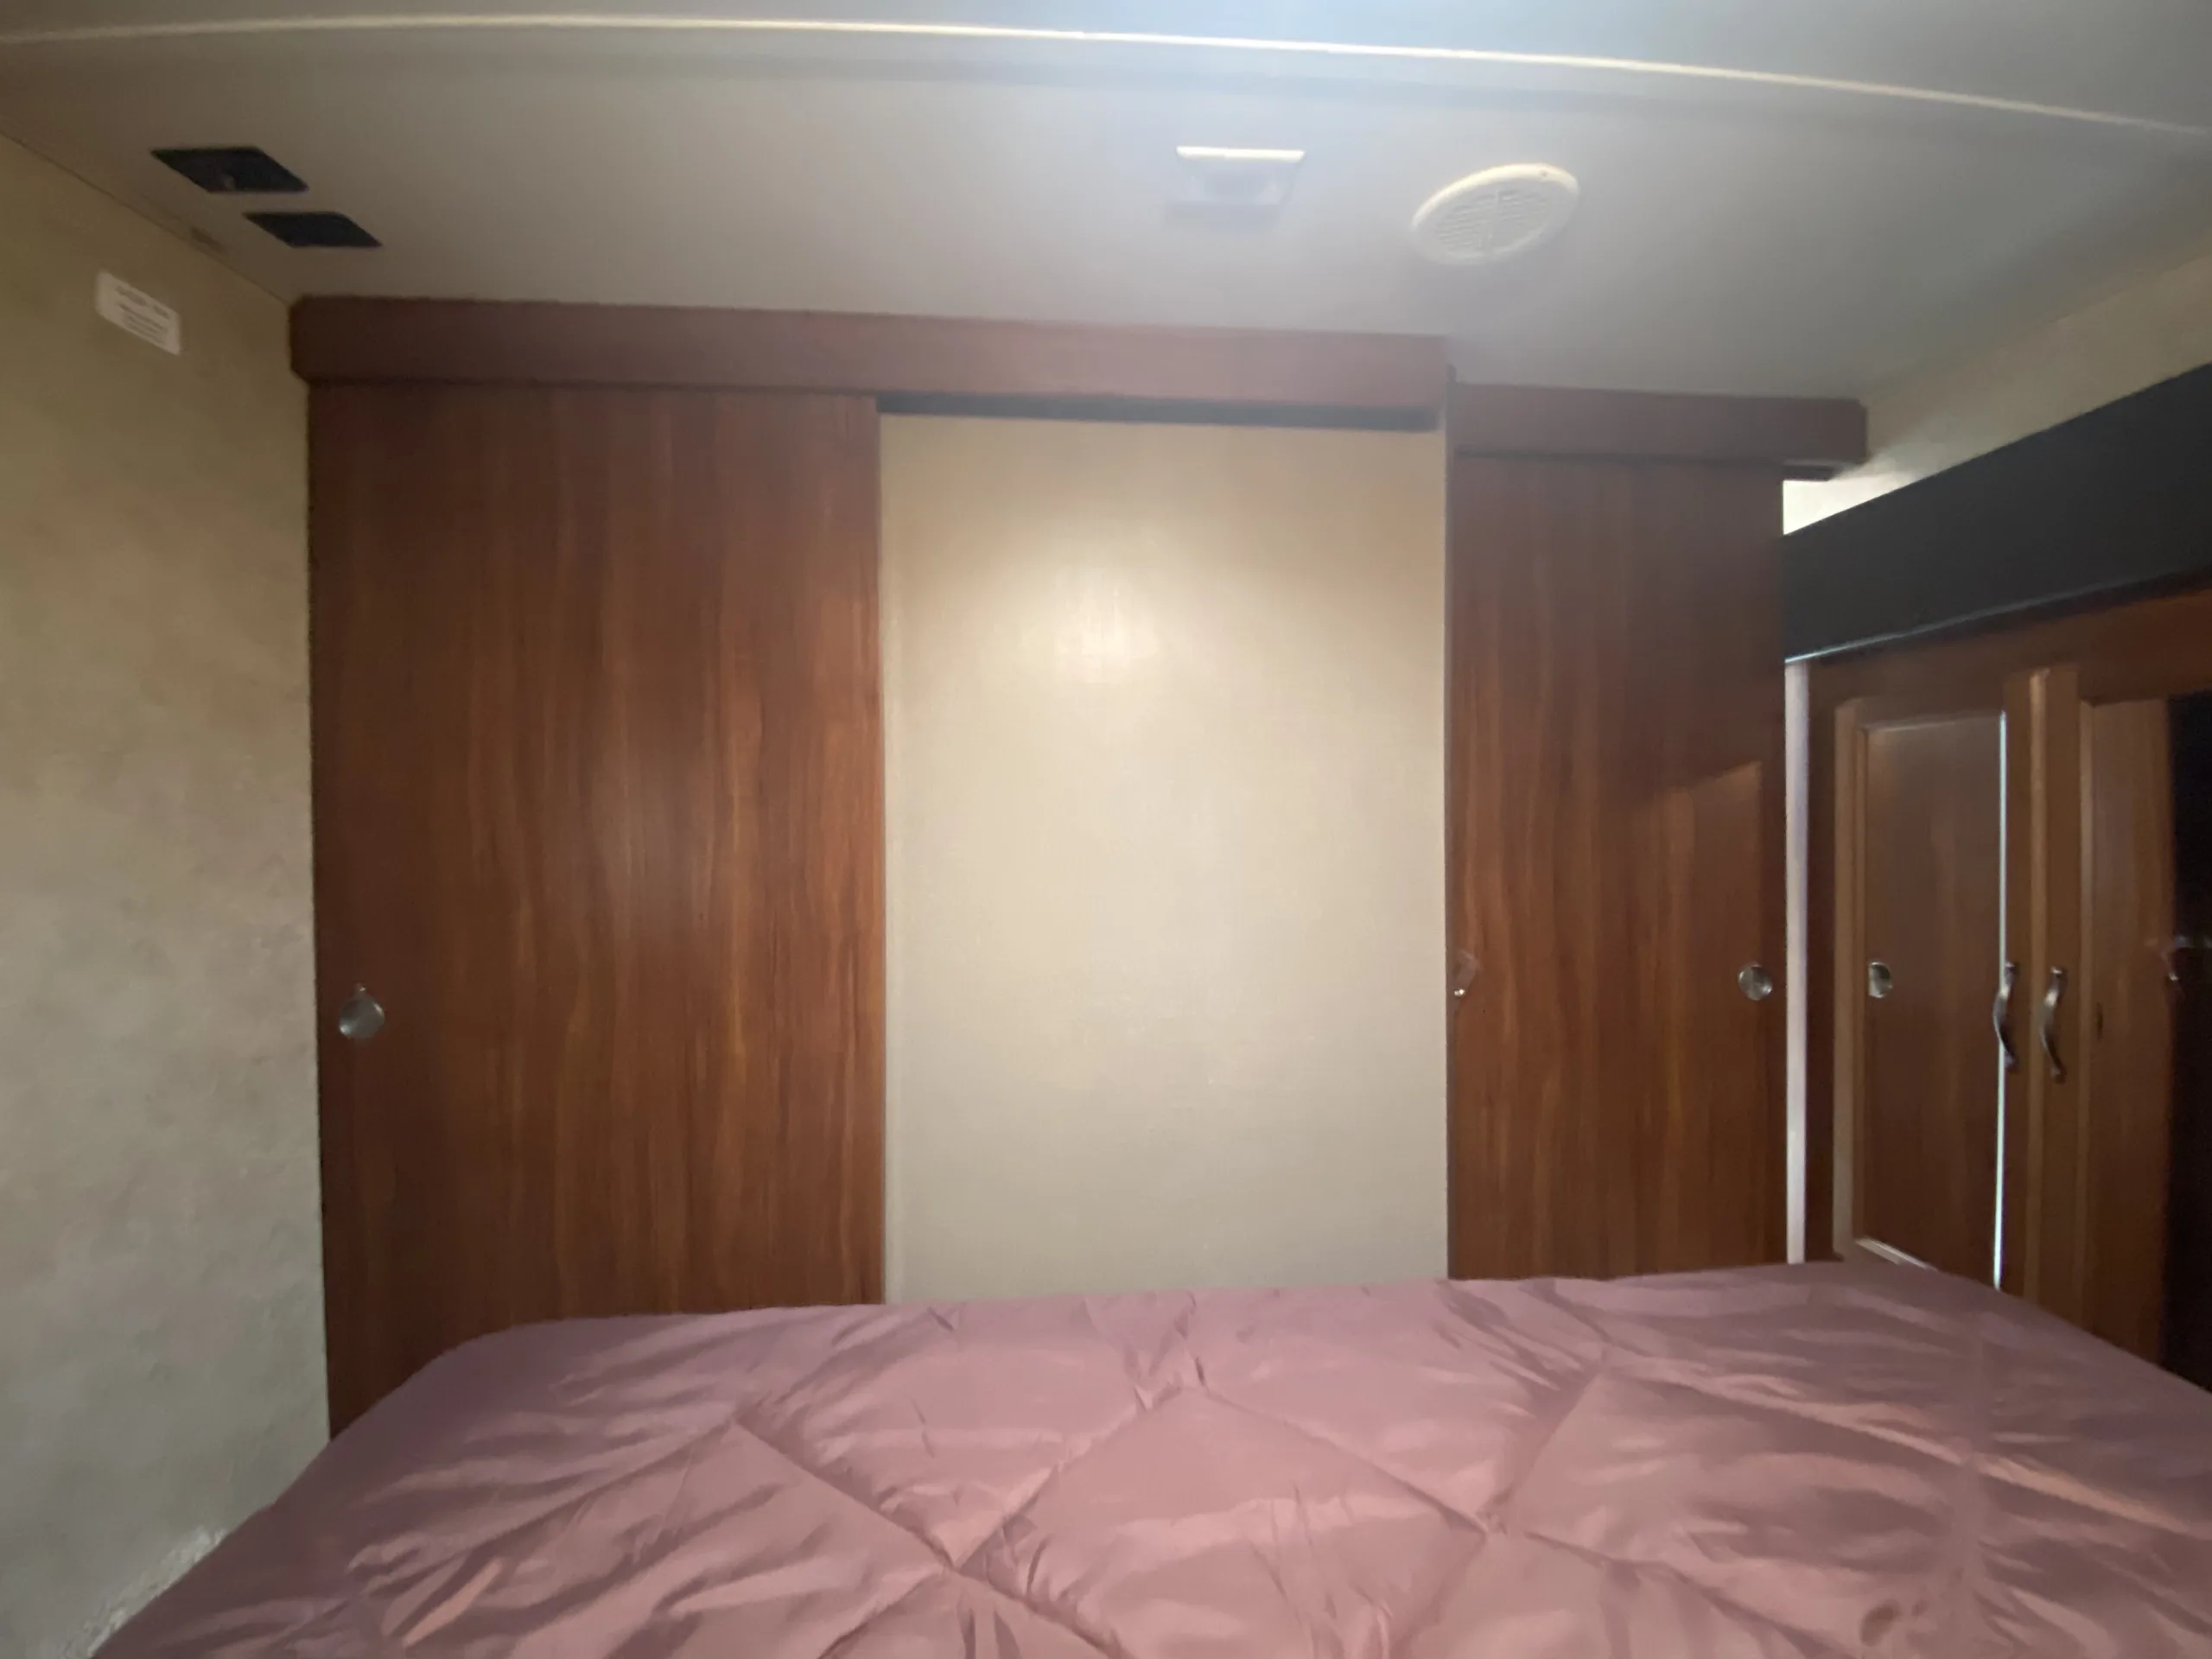 bedroom in fifth wheel camper